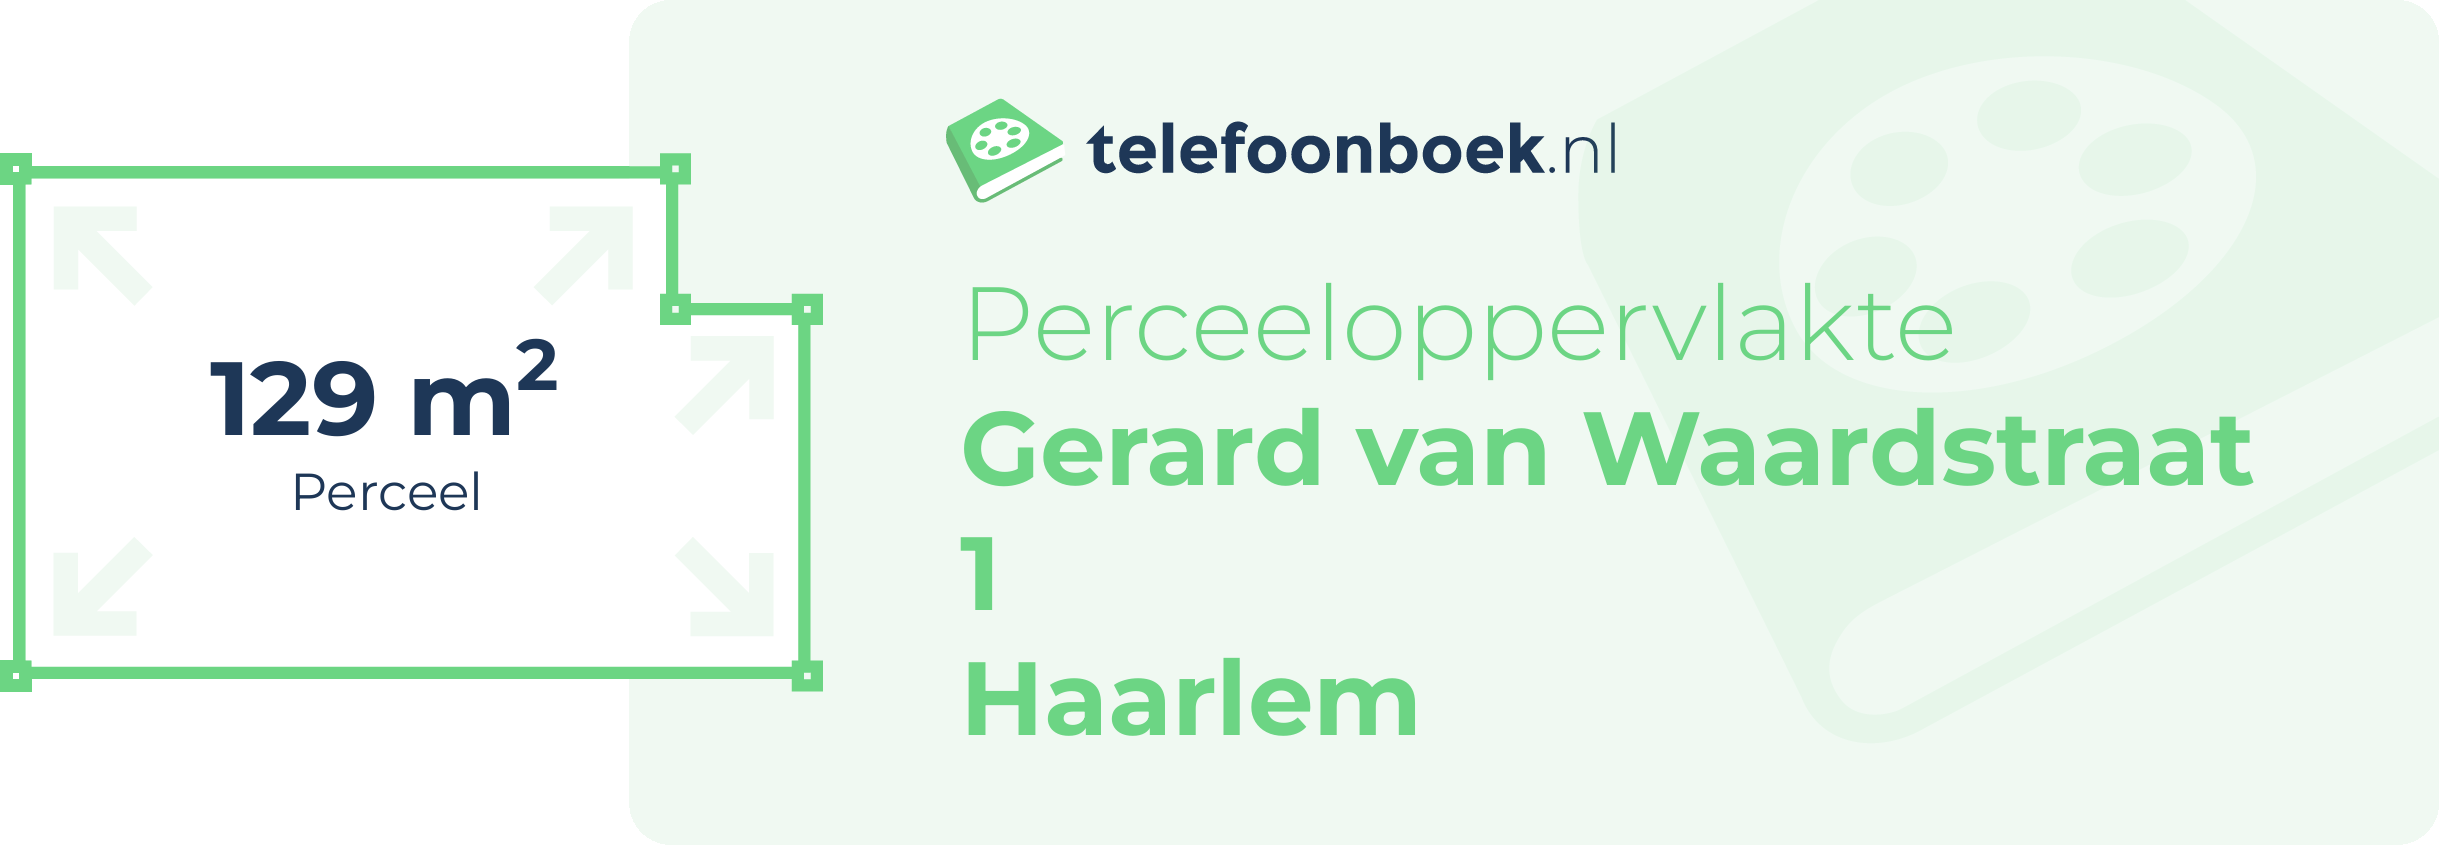 Perceeloppervlakte Gerard Van Waardstraat 1 Haarlem